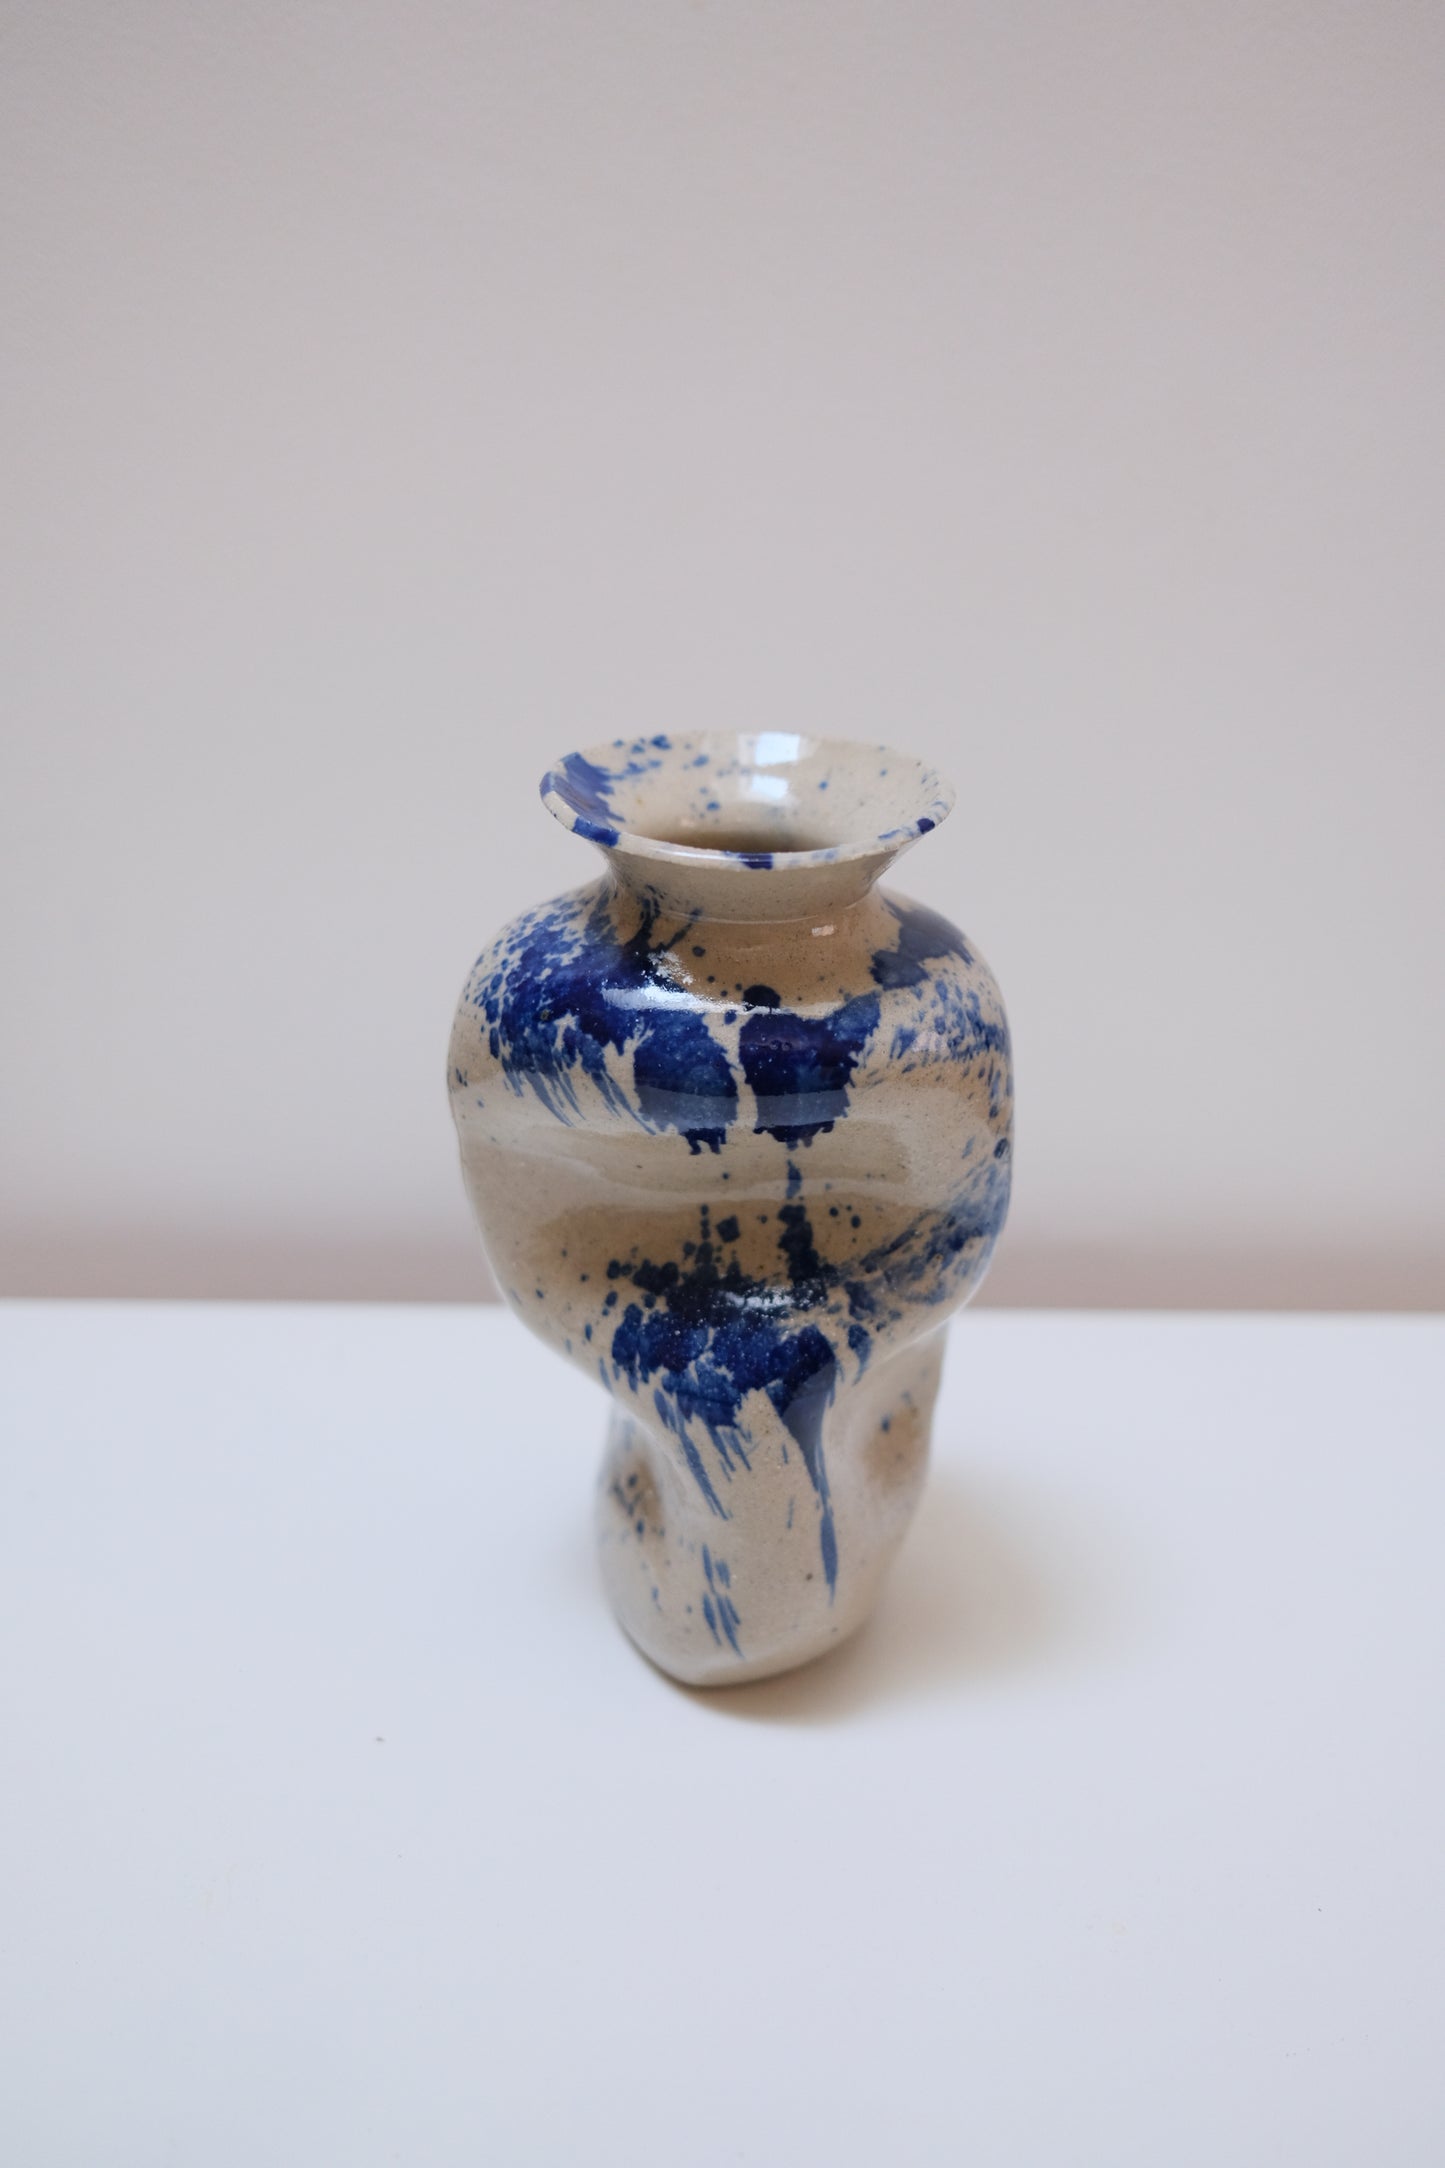 Warped Vase — Splashed Blue #4